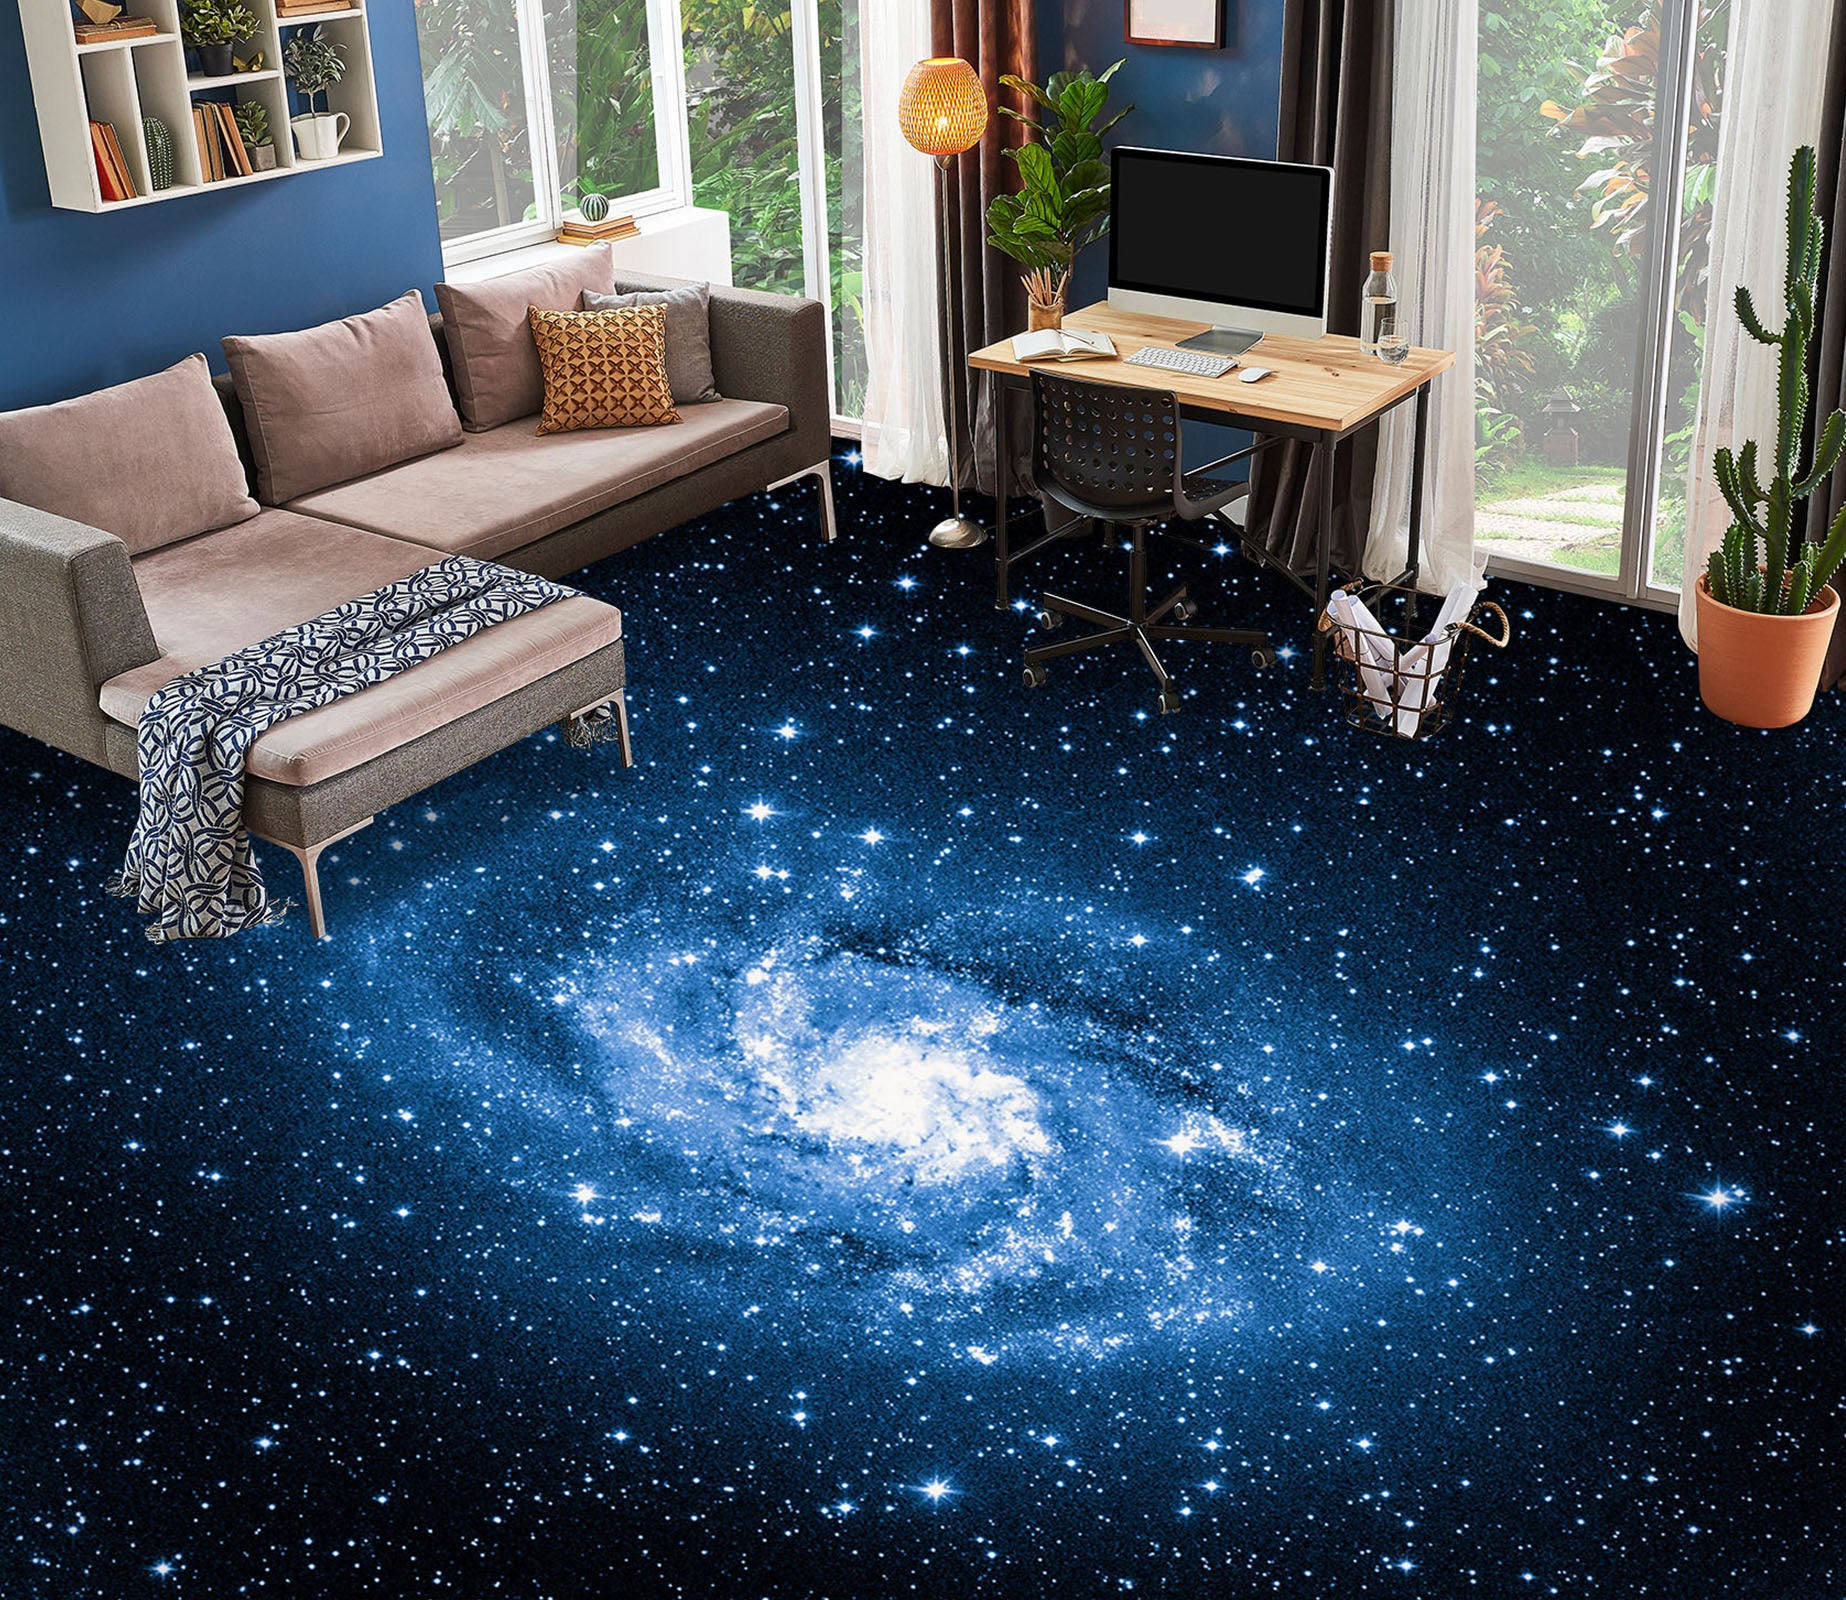 3D Psychedelic Blue Galaxy 515 Floor Mural  Wallpaper Murals Rug & Mat Print Epoxy waterproof bath floor